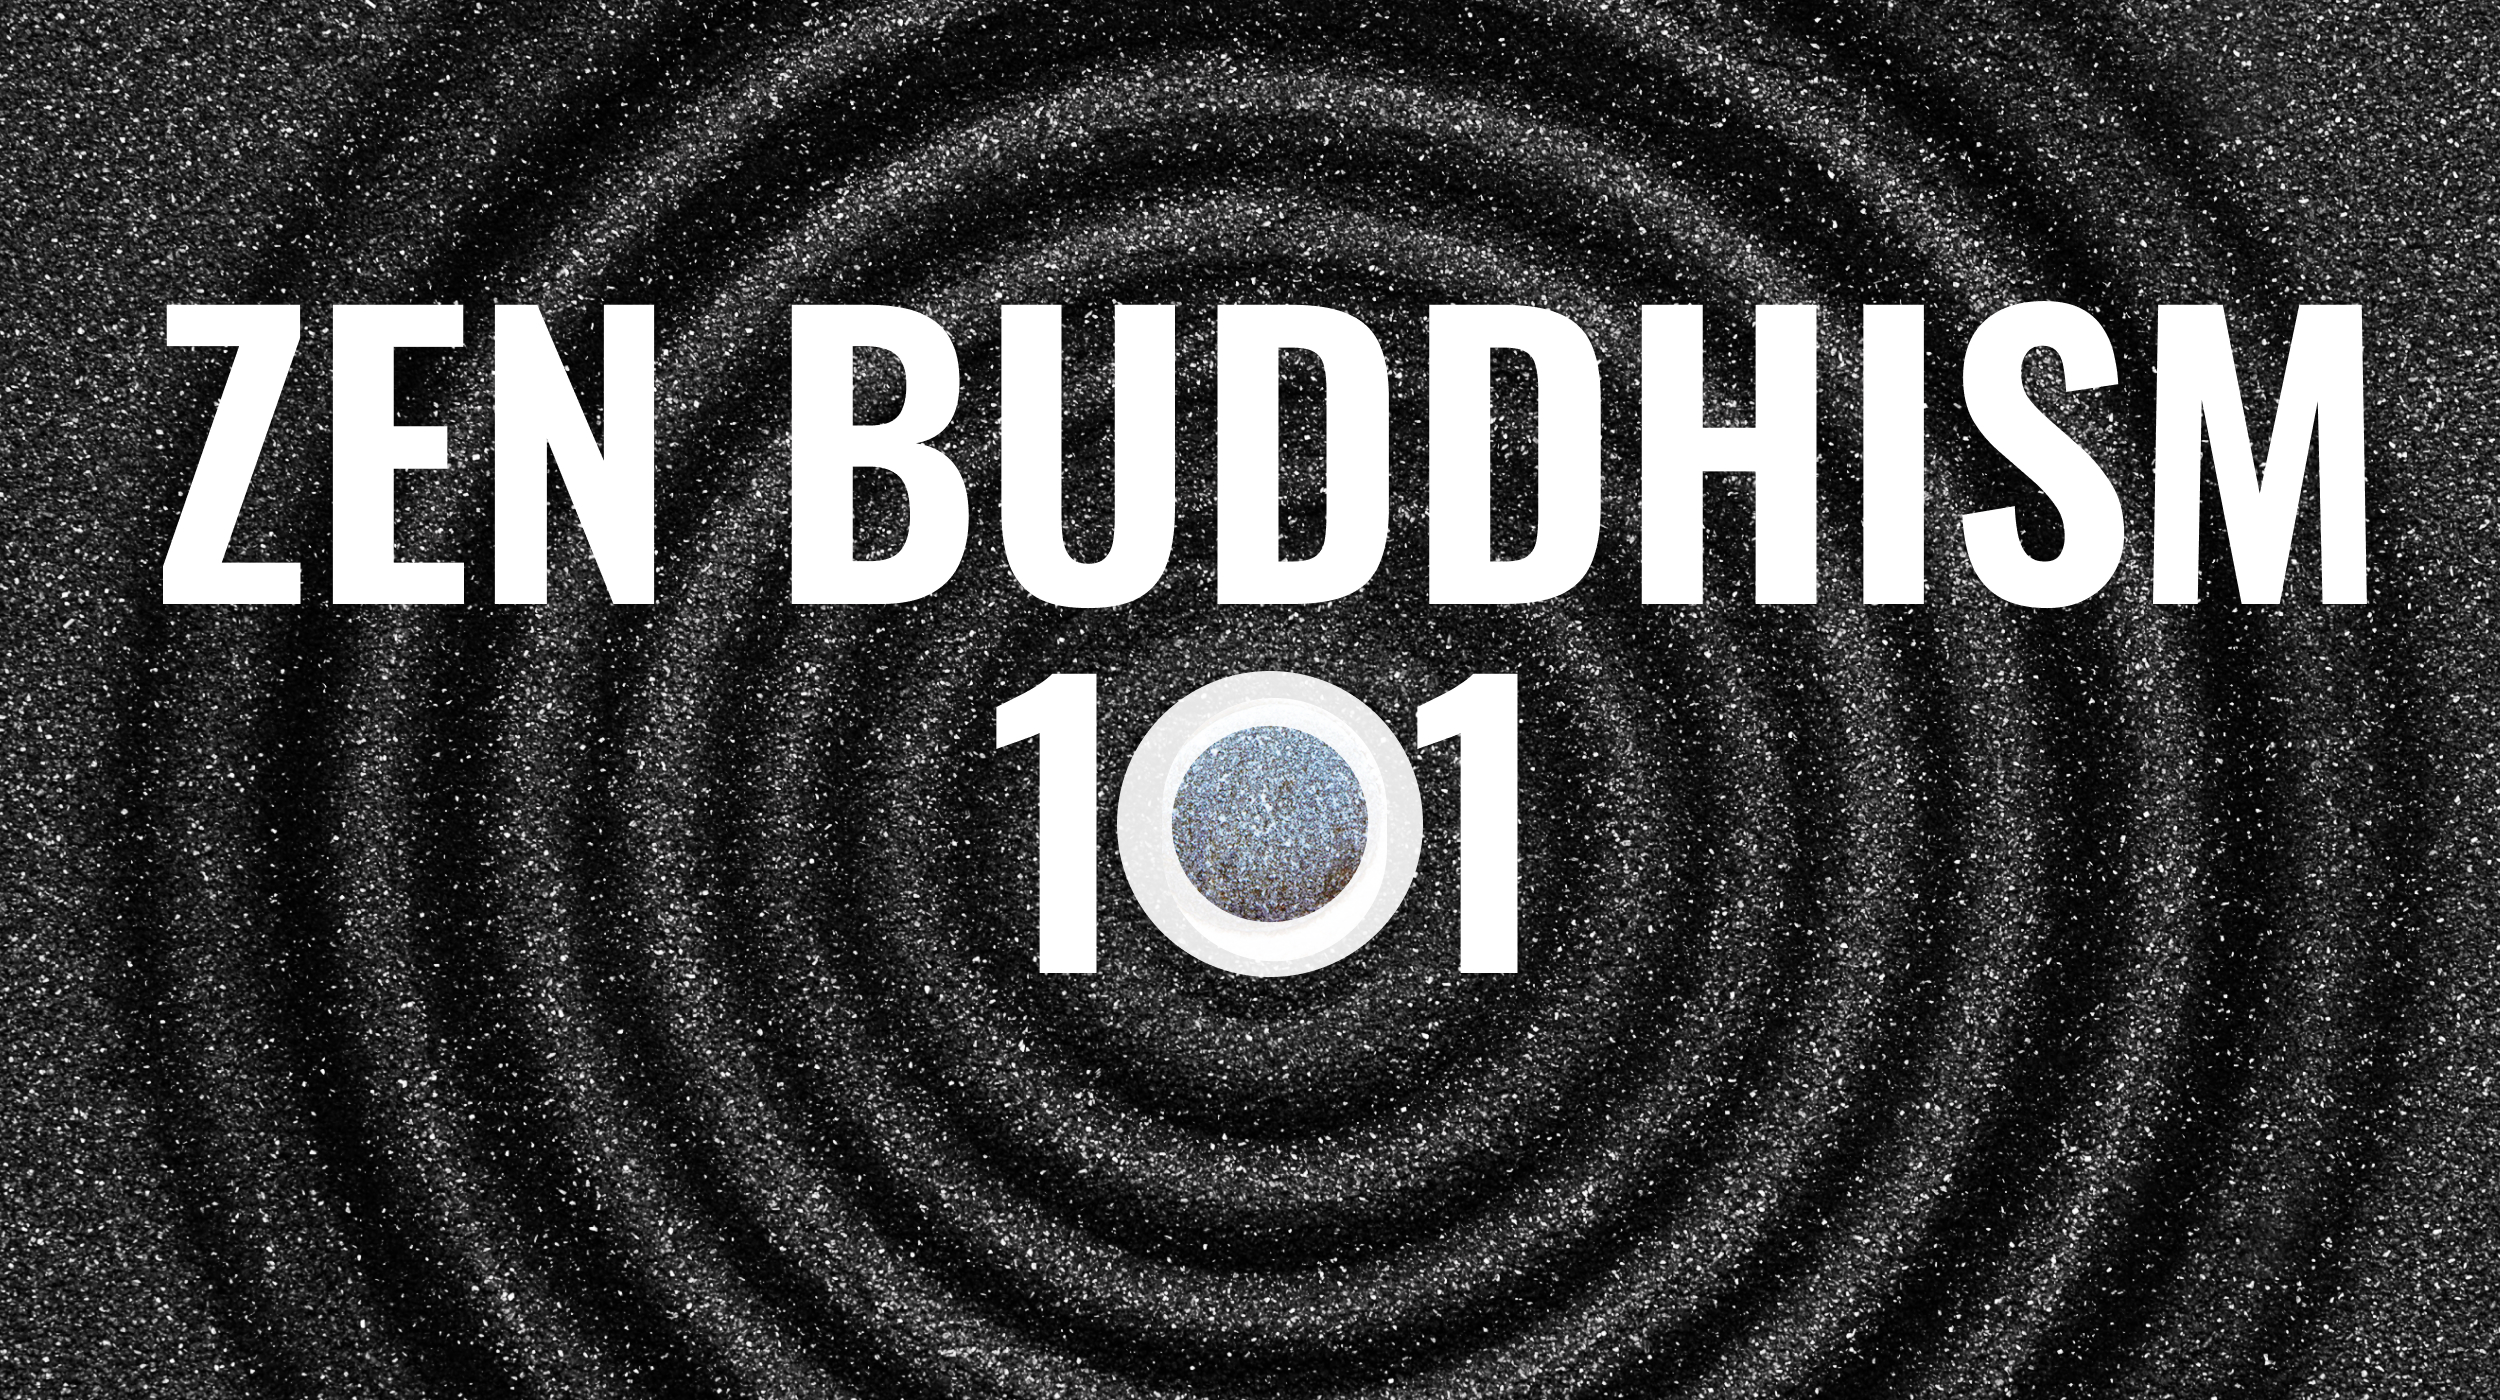 Zen buddhism 101 by zen buddhism 101.